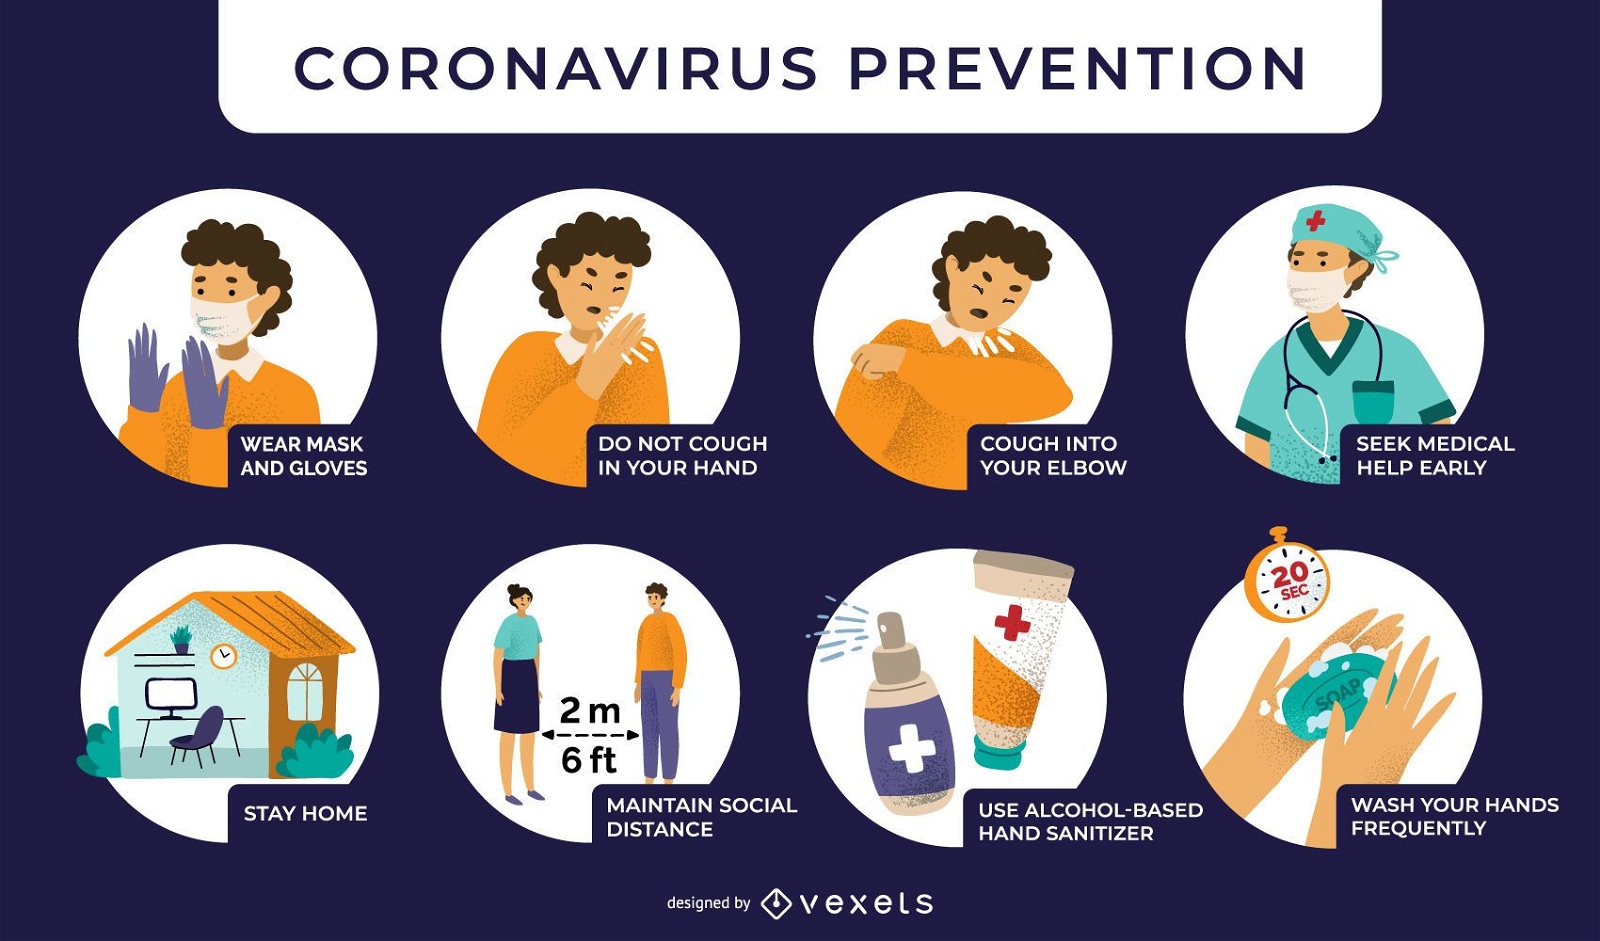 Abbildungen zur Coronavirus-Pr?vention